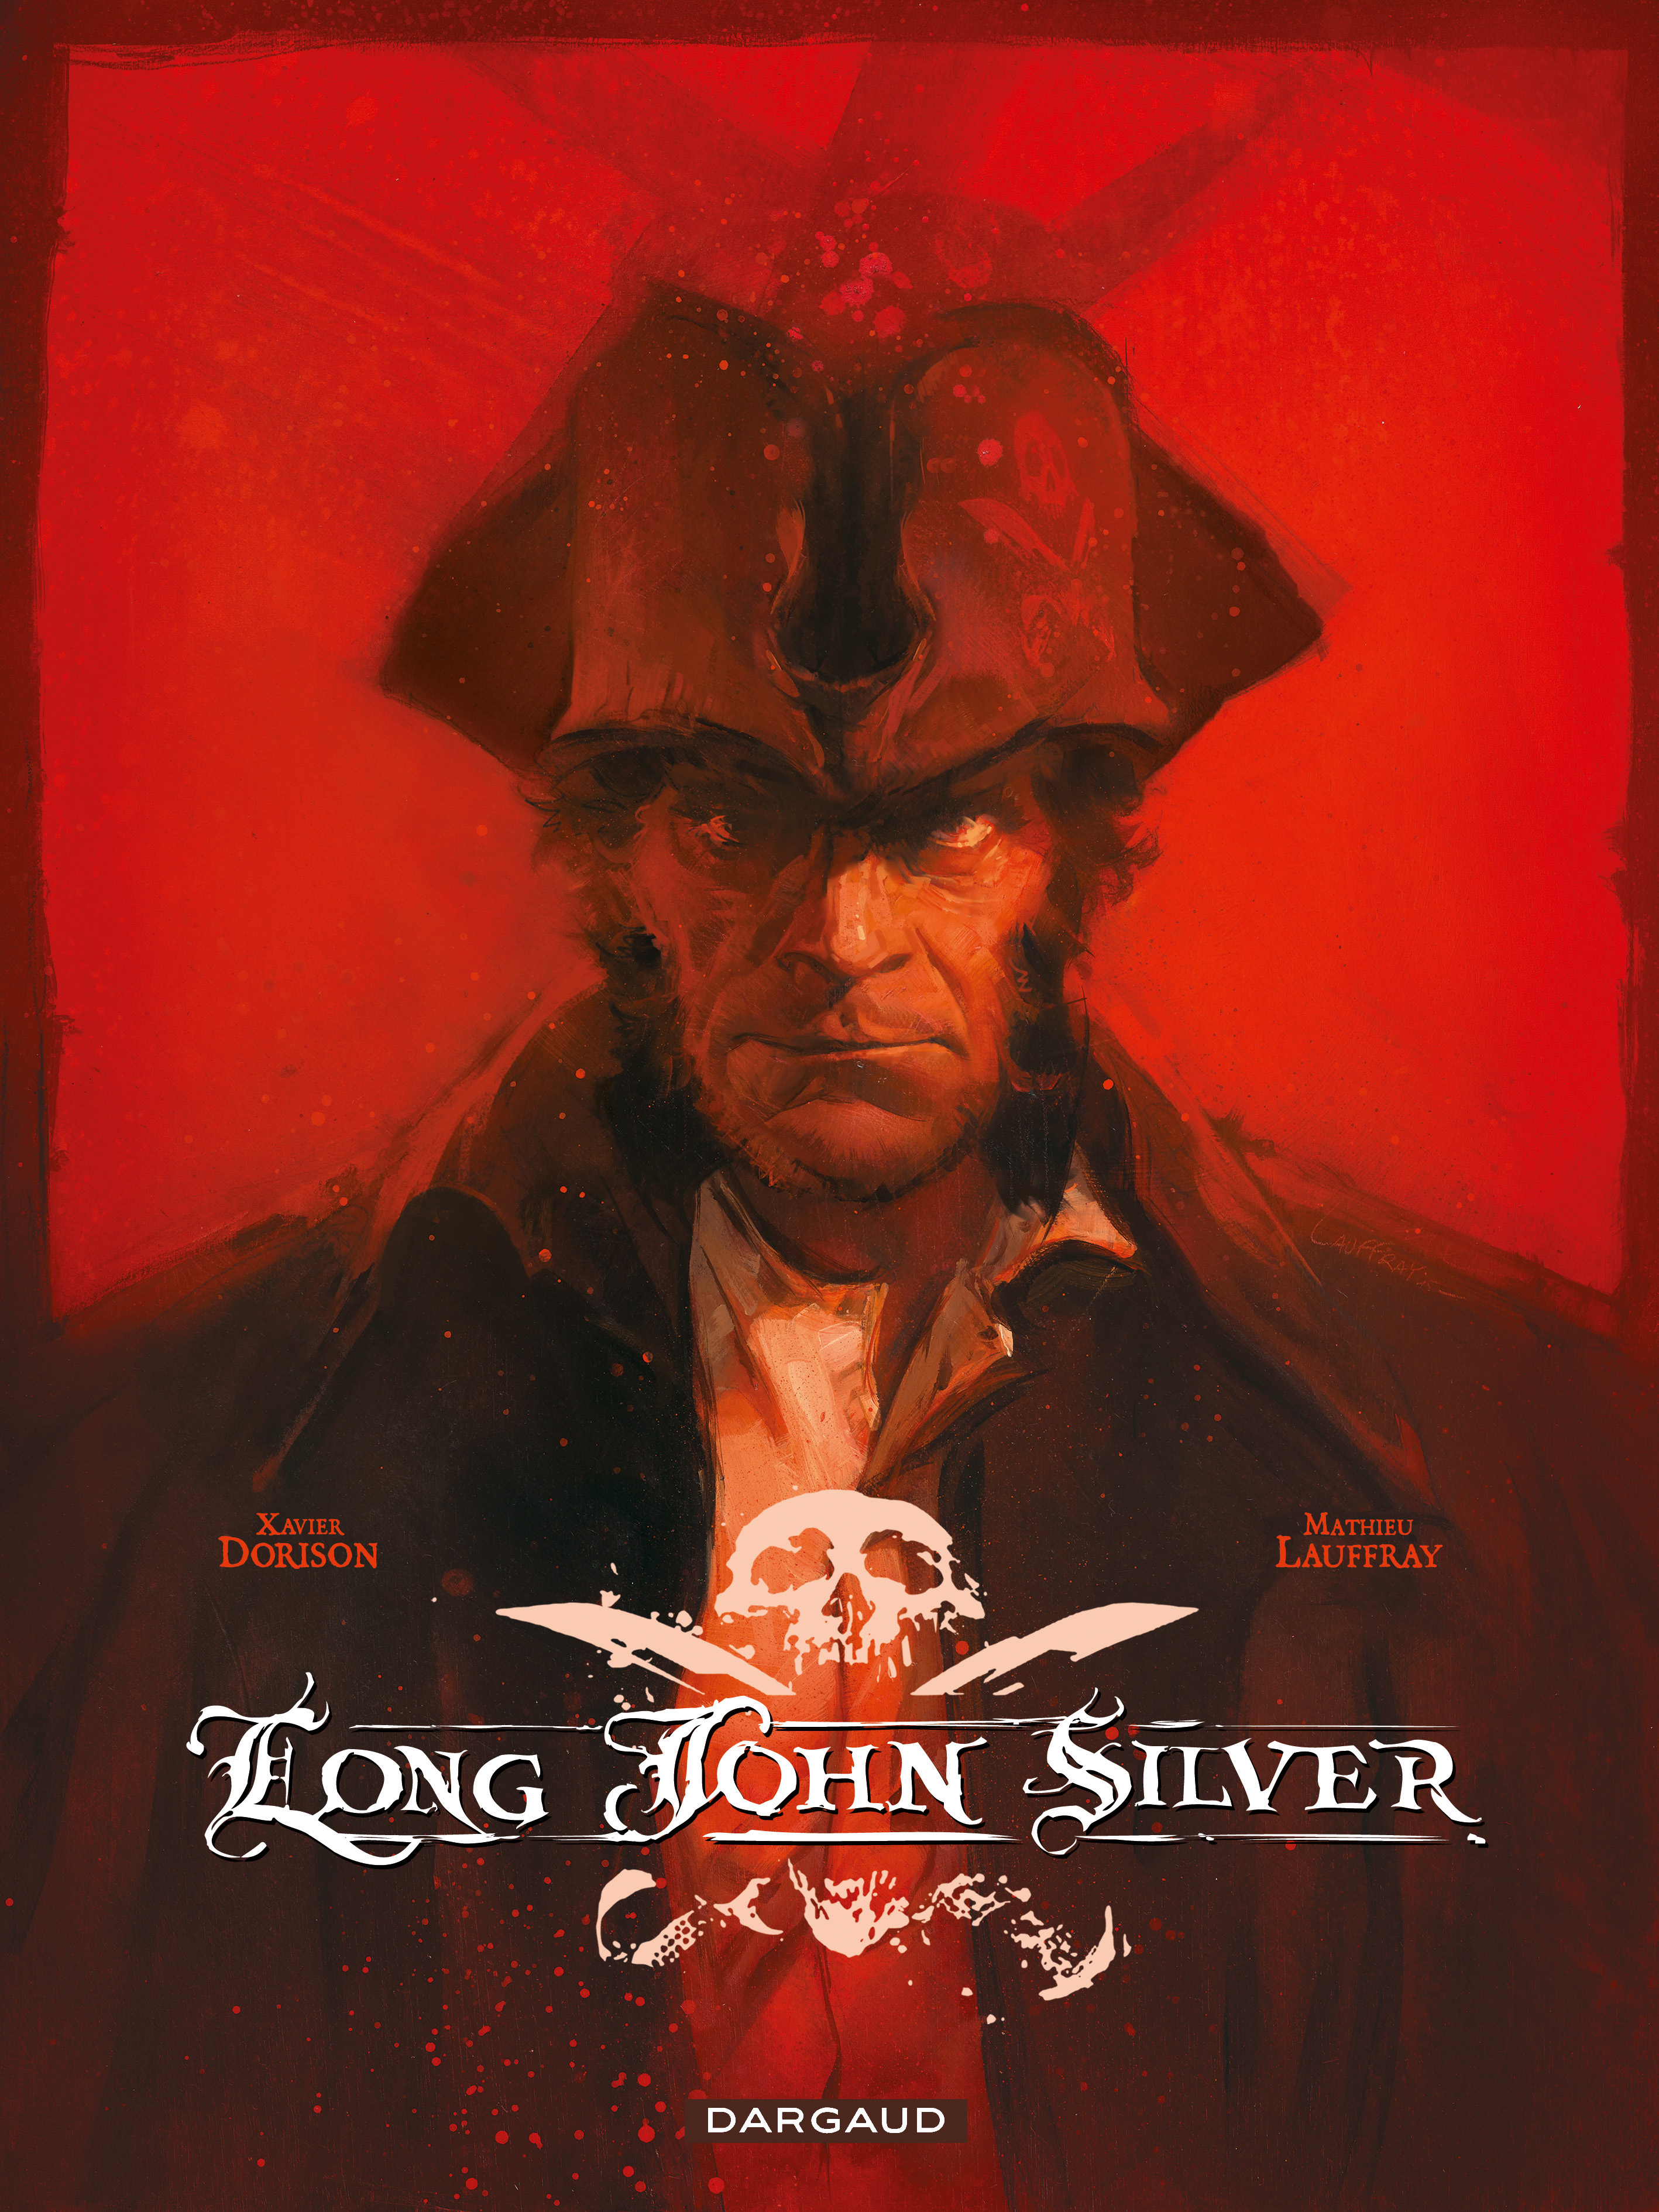 John silver long (dong) Long Dong